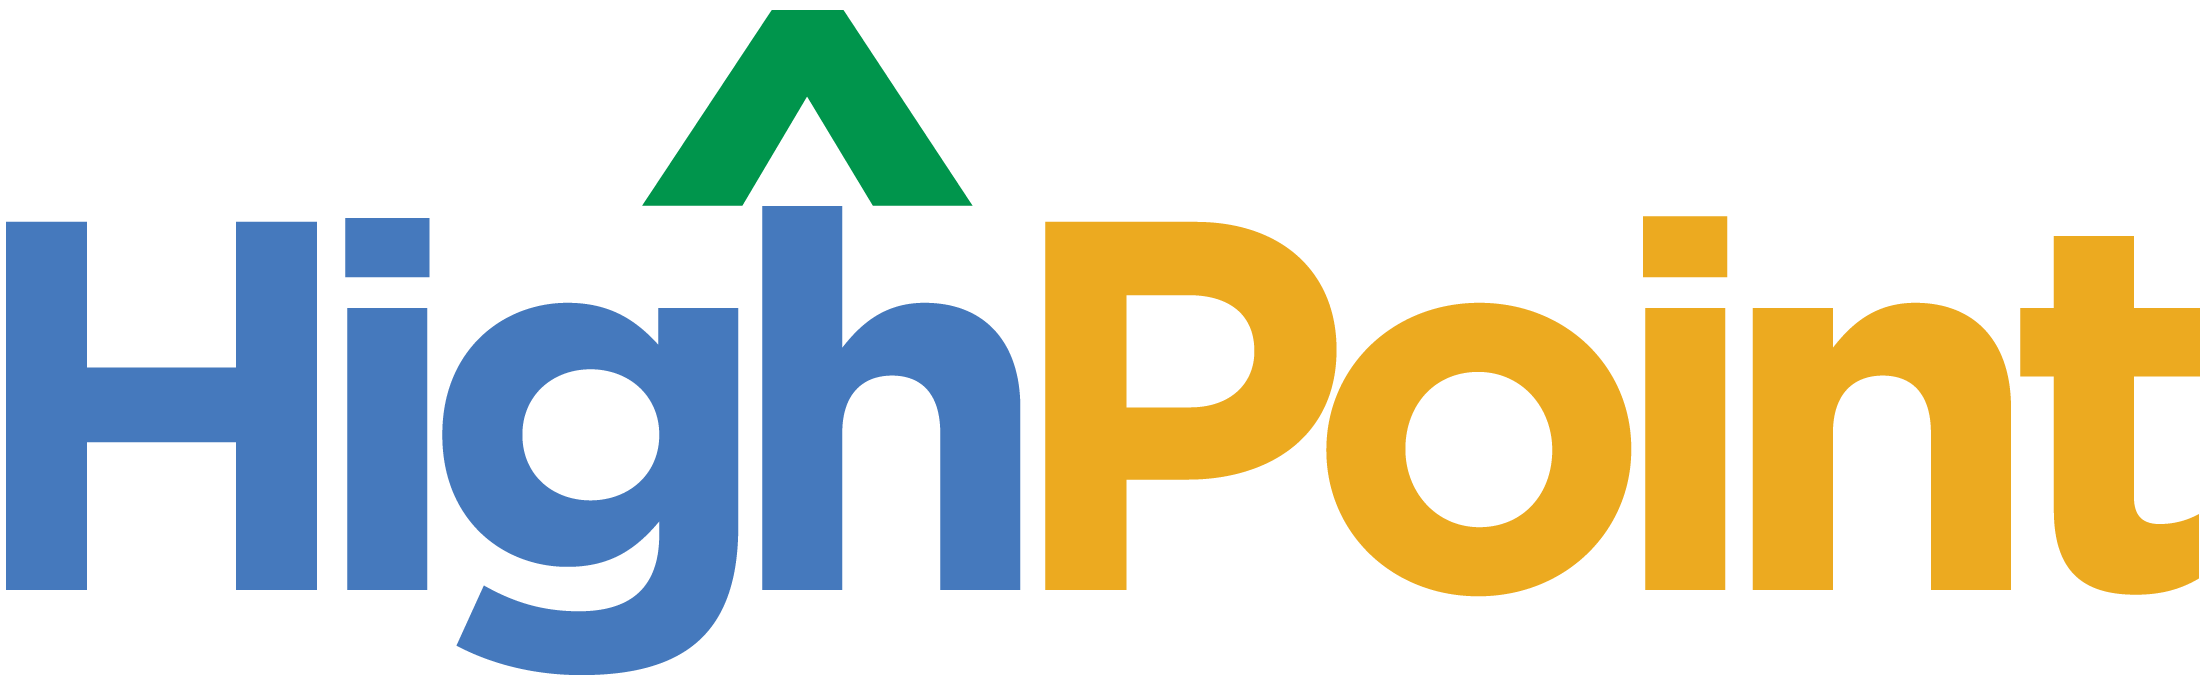 HighPoint-logo-RGB-no-tag-trans-72dpi.png